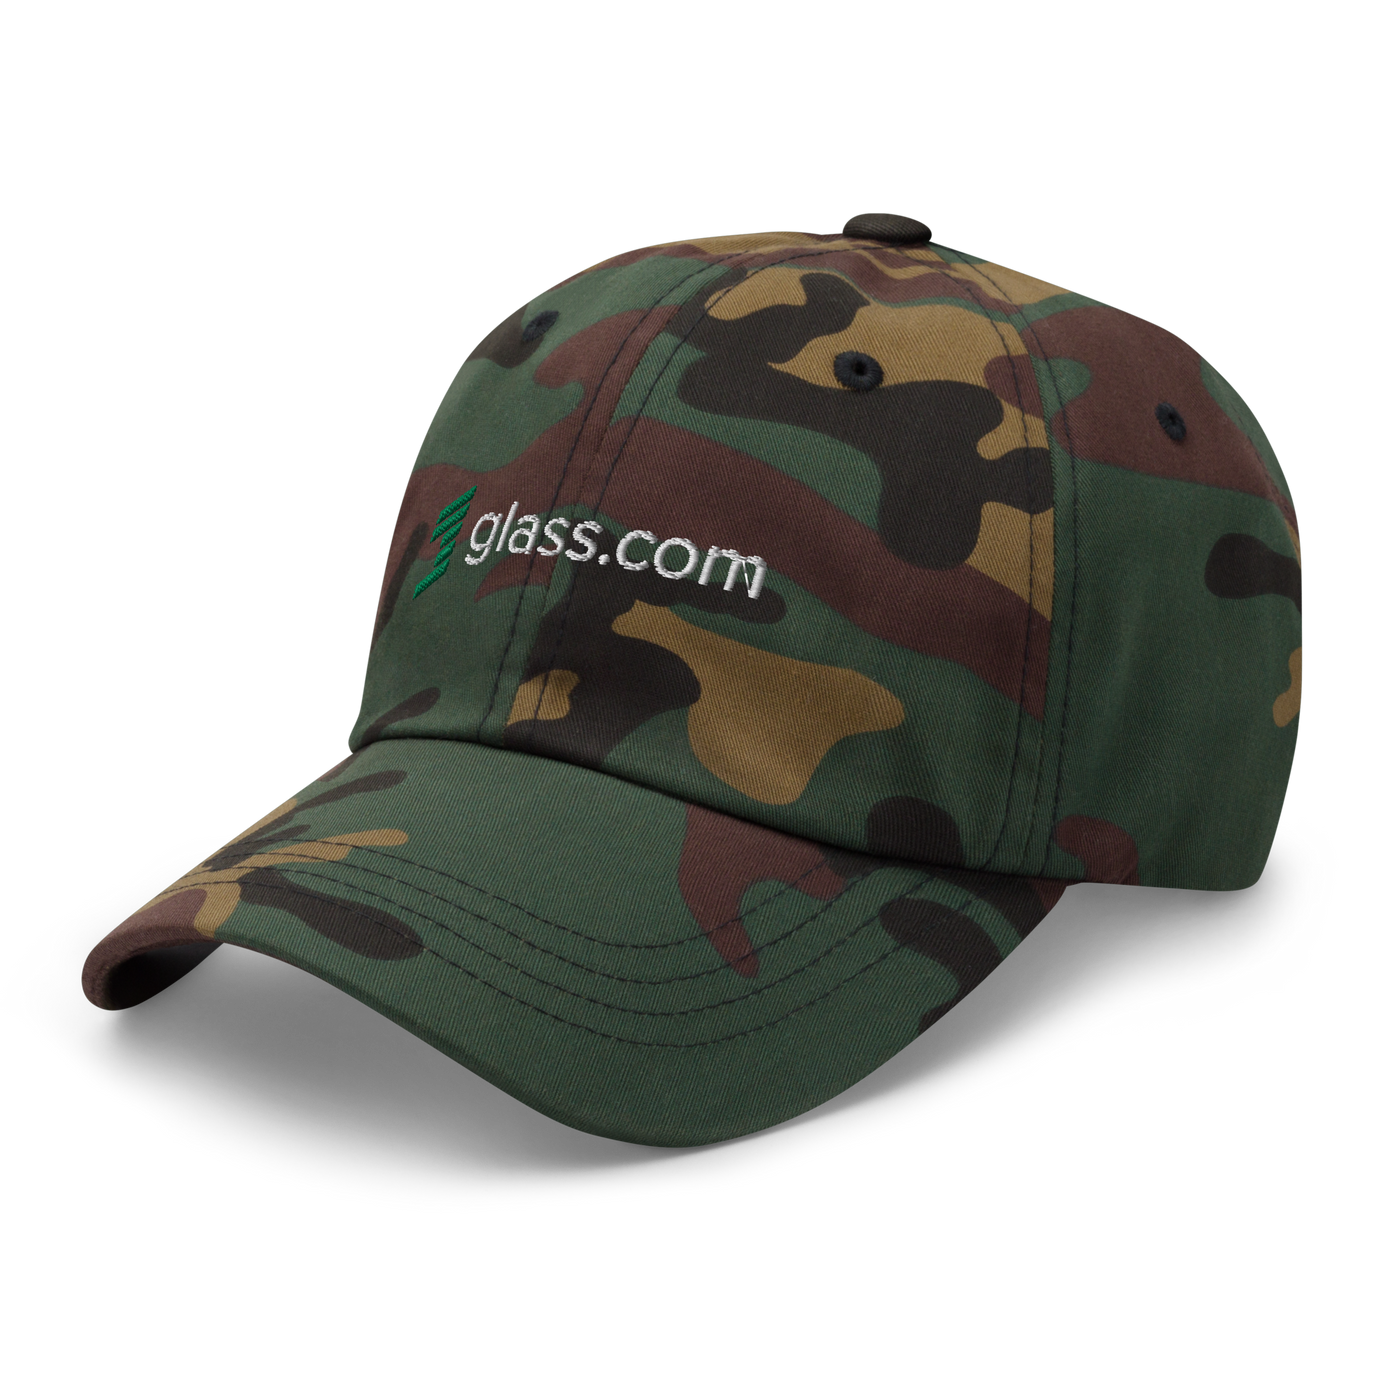 Glass.com Baseball Hat